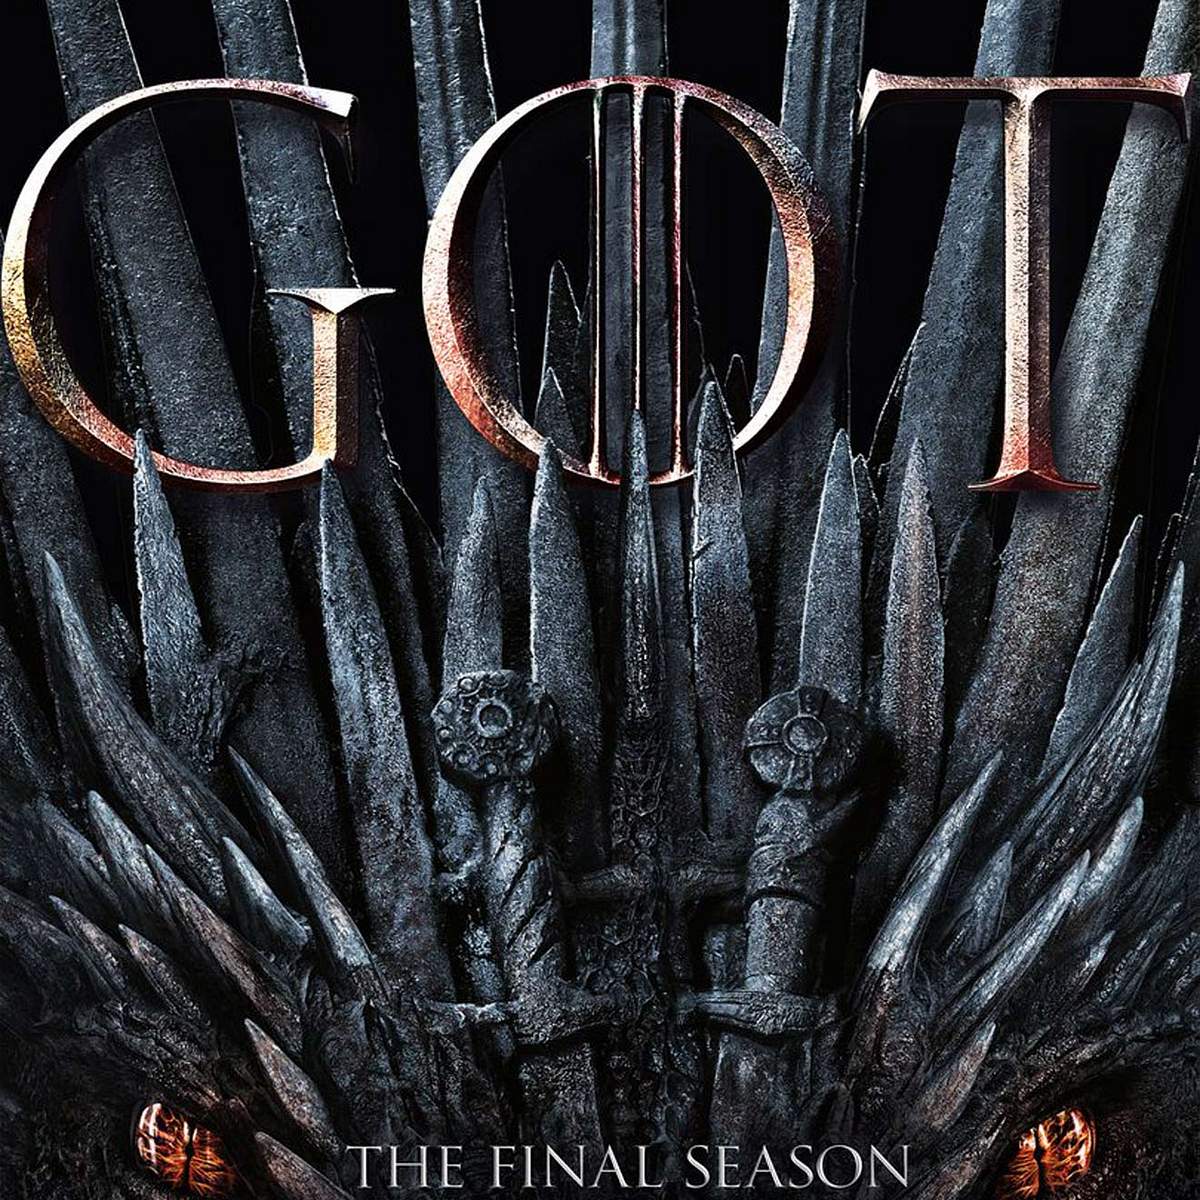 Die achte und letzte Staffel Game of Thrones startet am kommenden Sonntag